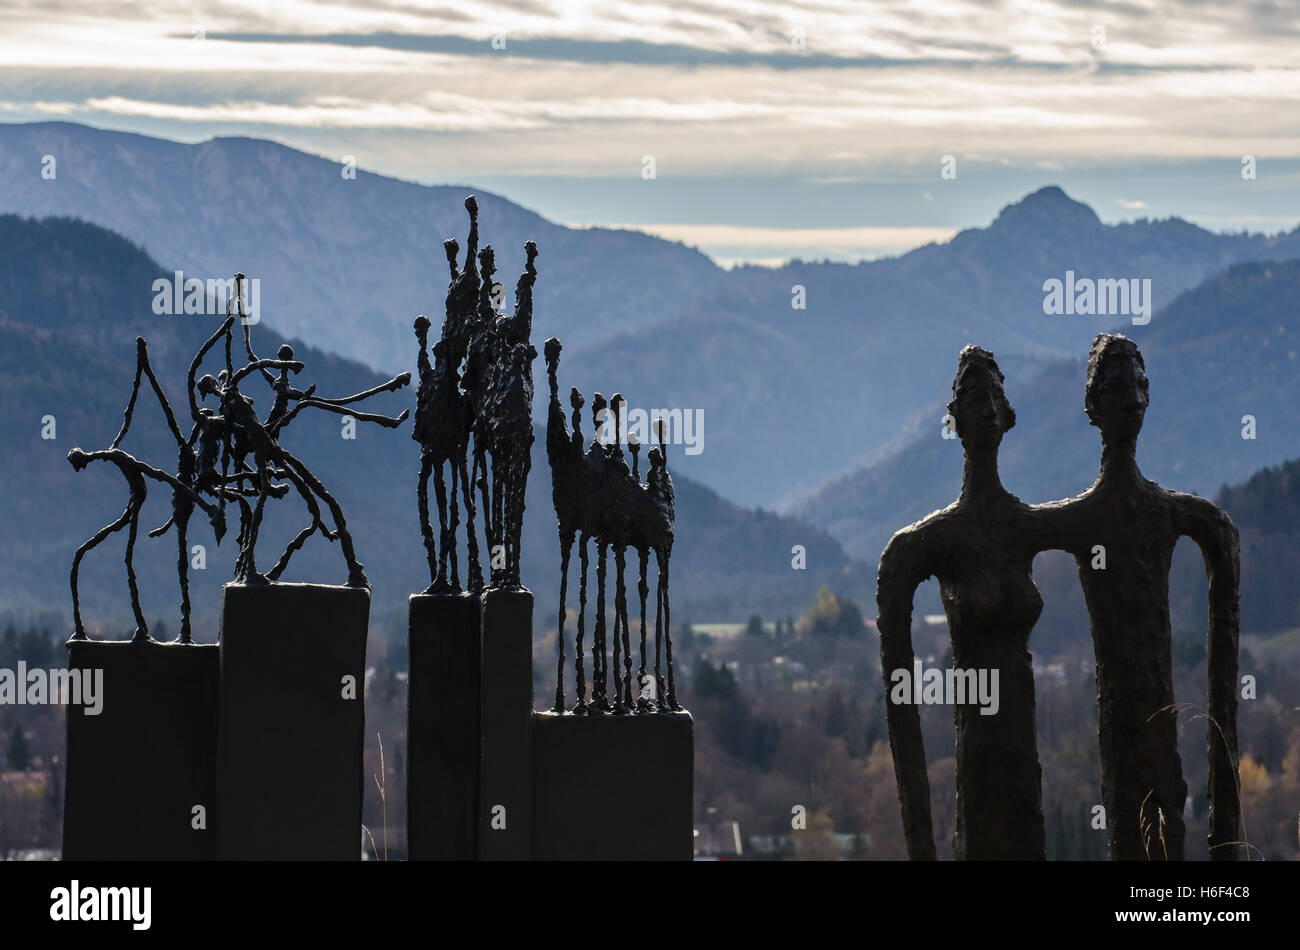 Silouettes de figures humaines contre les montagnes près du lac Tegernsee Banque D'Images